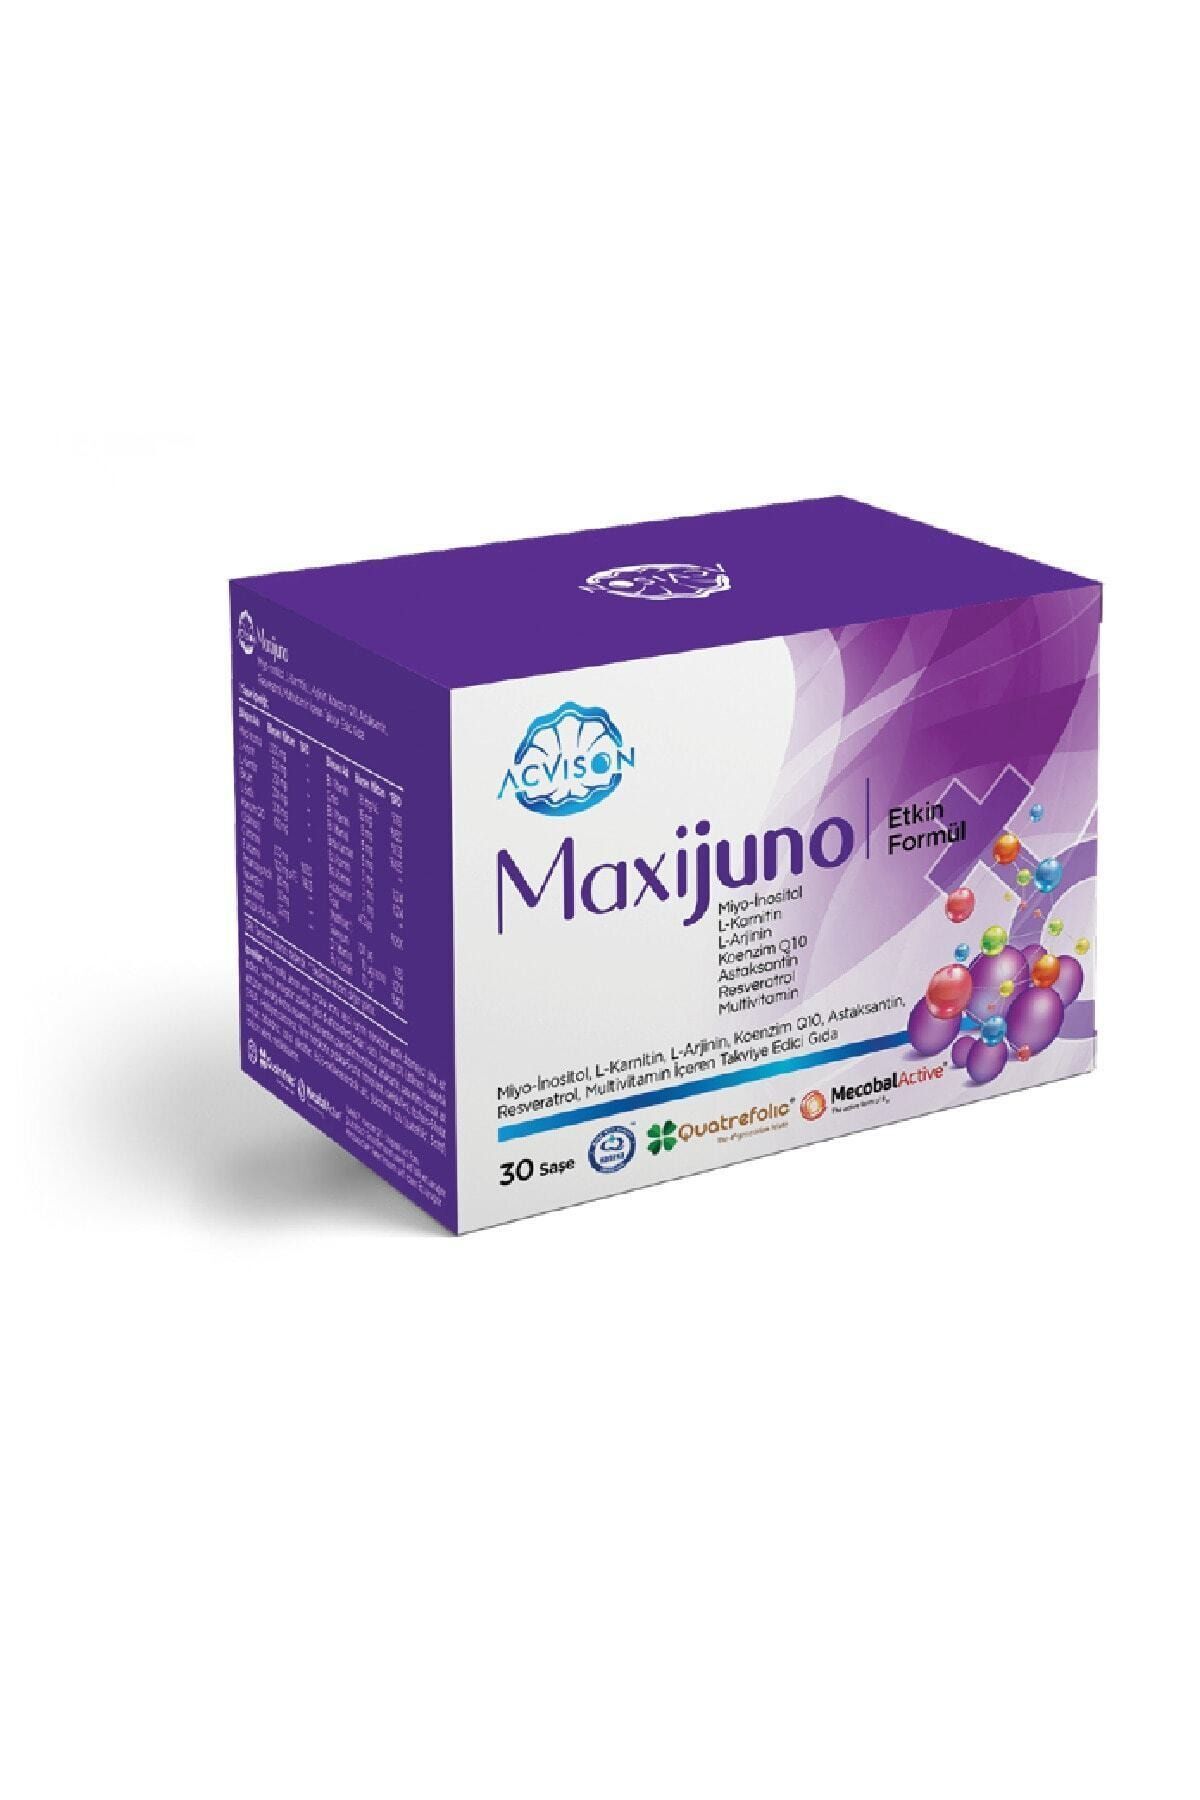 Acvison Maxijuno Kadınlara Özel Miyo-inositol L-arjinin L-karnitin Koenzim Q10 Içeren Multivitamin 30 Saşe